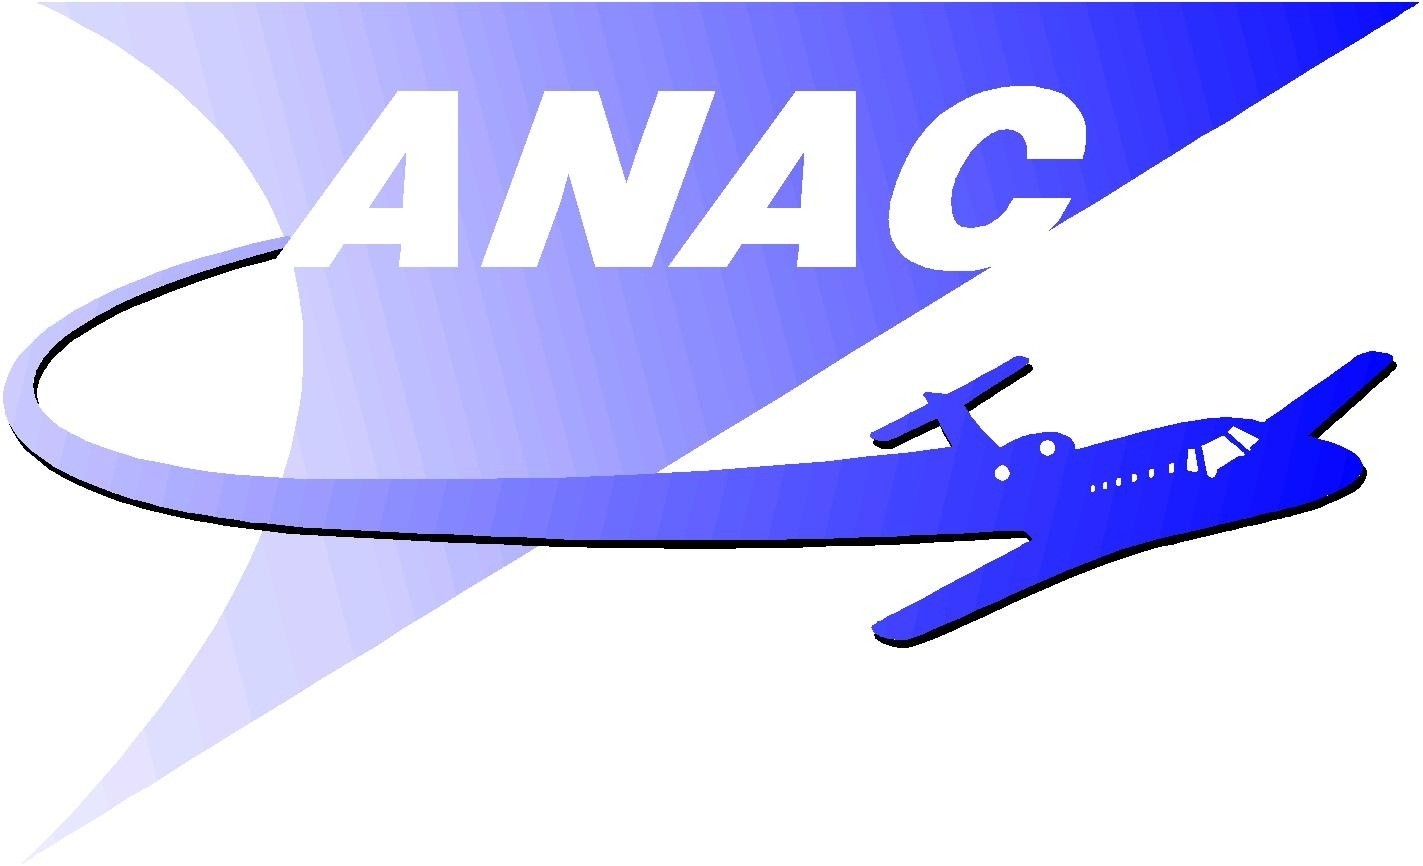 ANAC: saiba todas as informações pelo site